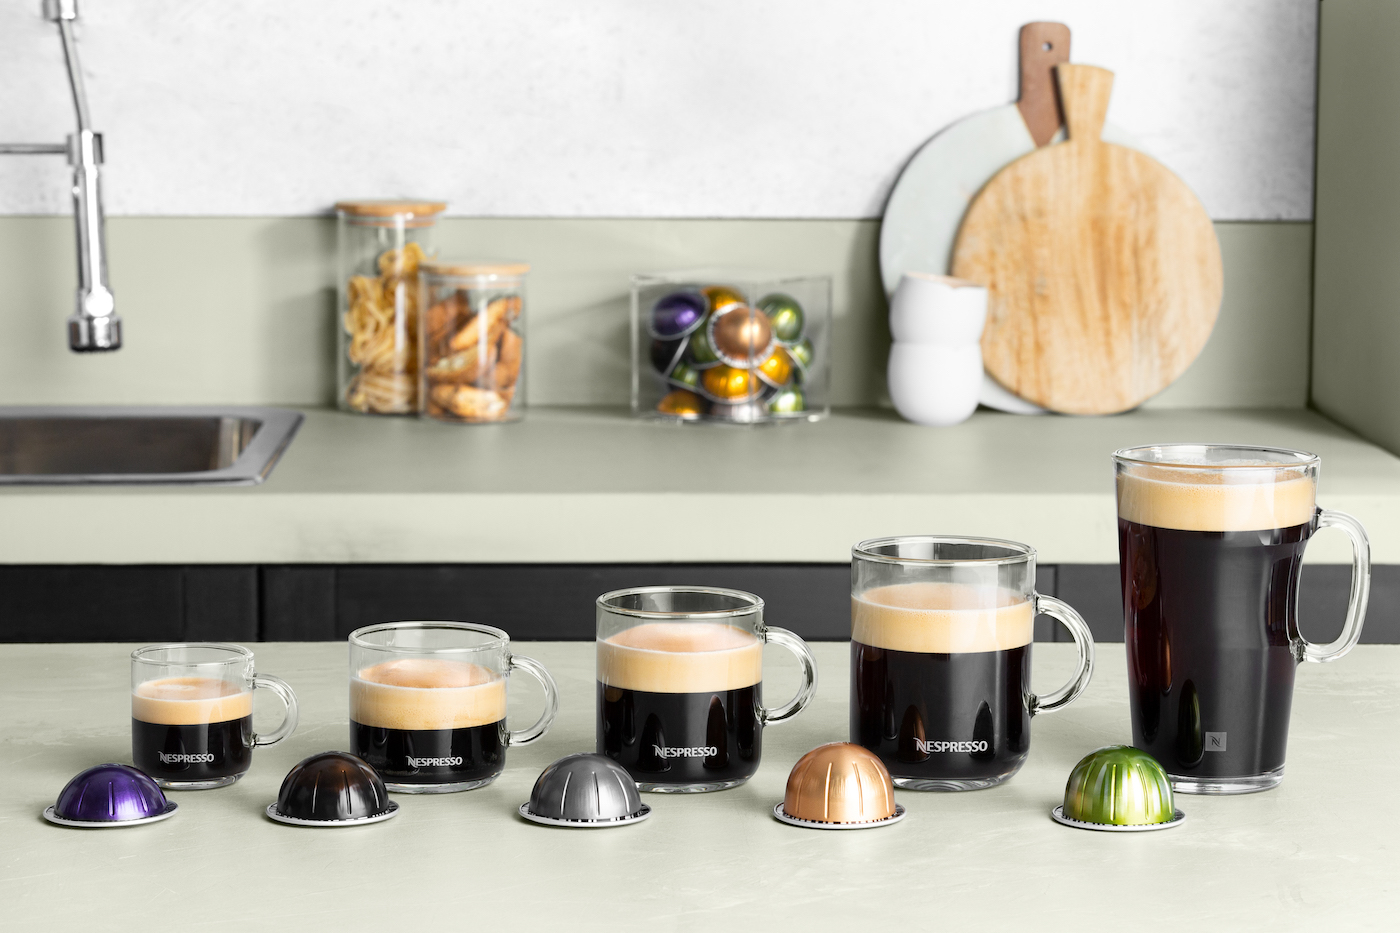 Verdeel dam inhoudsopgave Nespresso lanceert nieuwe koffiemachine die 5 soorten koffies kan zetten